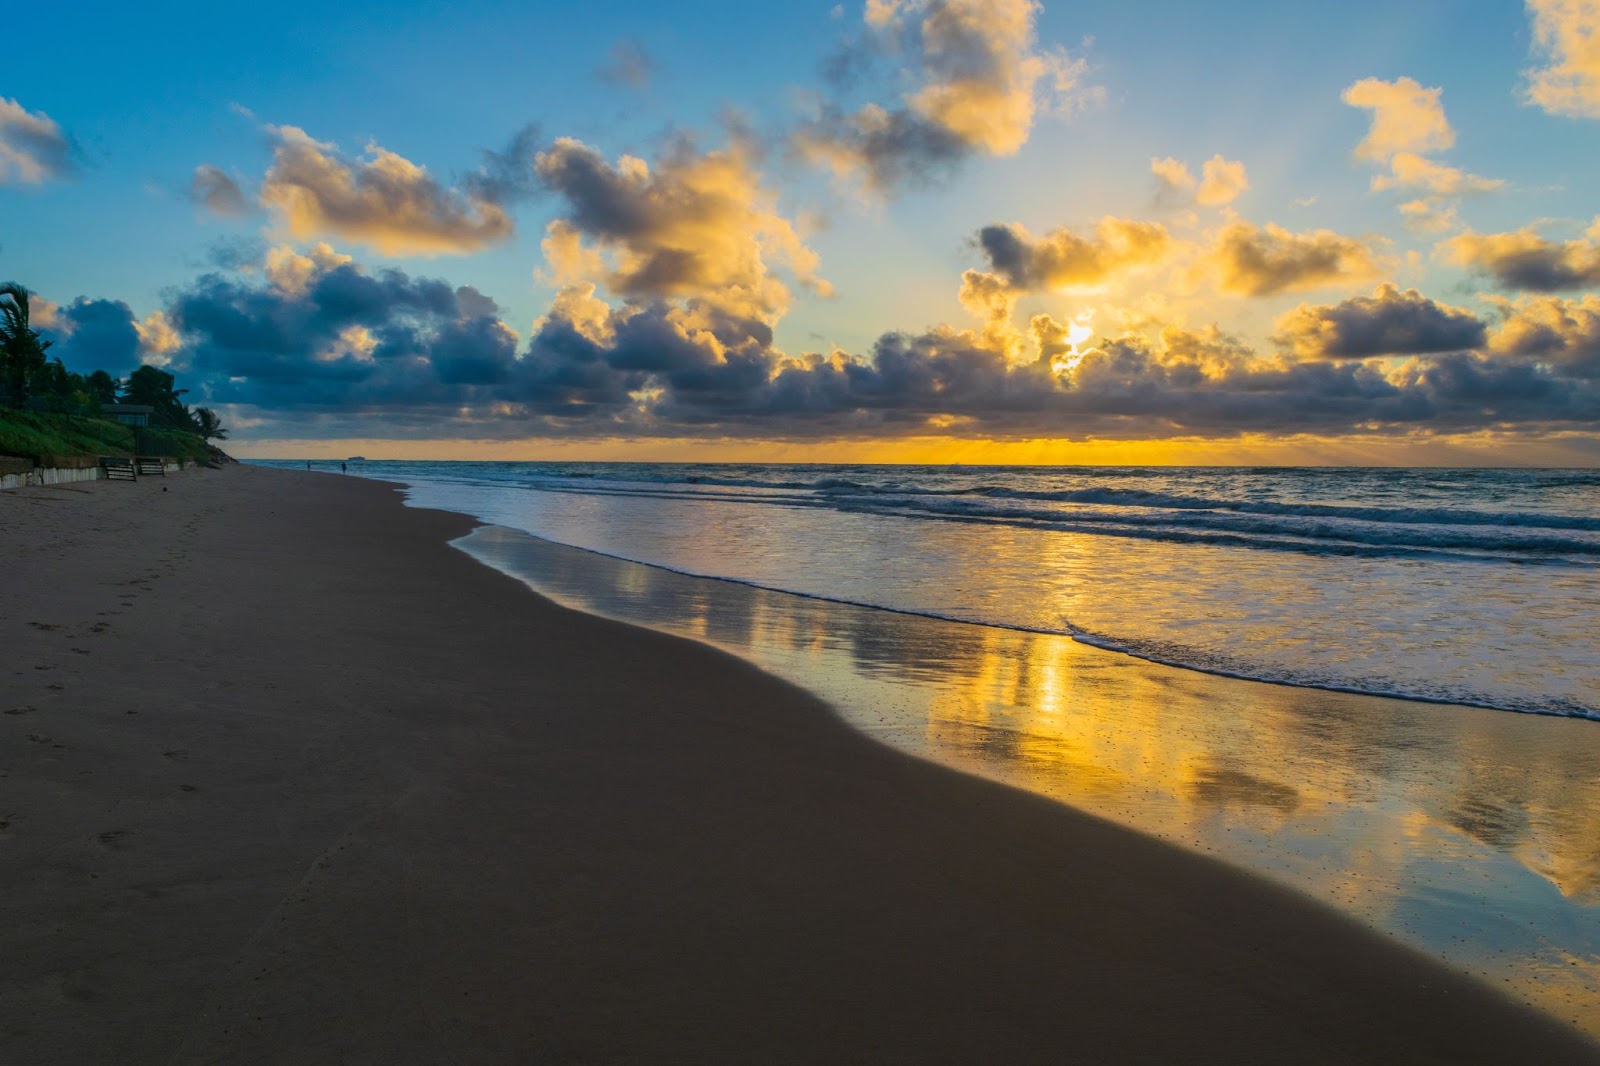 Pôr do sol sobre o mar de Porto de Galinhas, PE. O mar tranquilo reflete o brilho dourado do entardecer. A faixa de areia está limpa e vazia